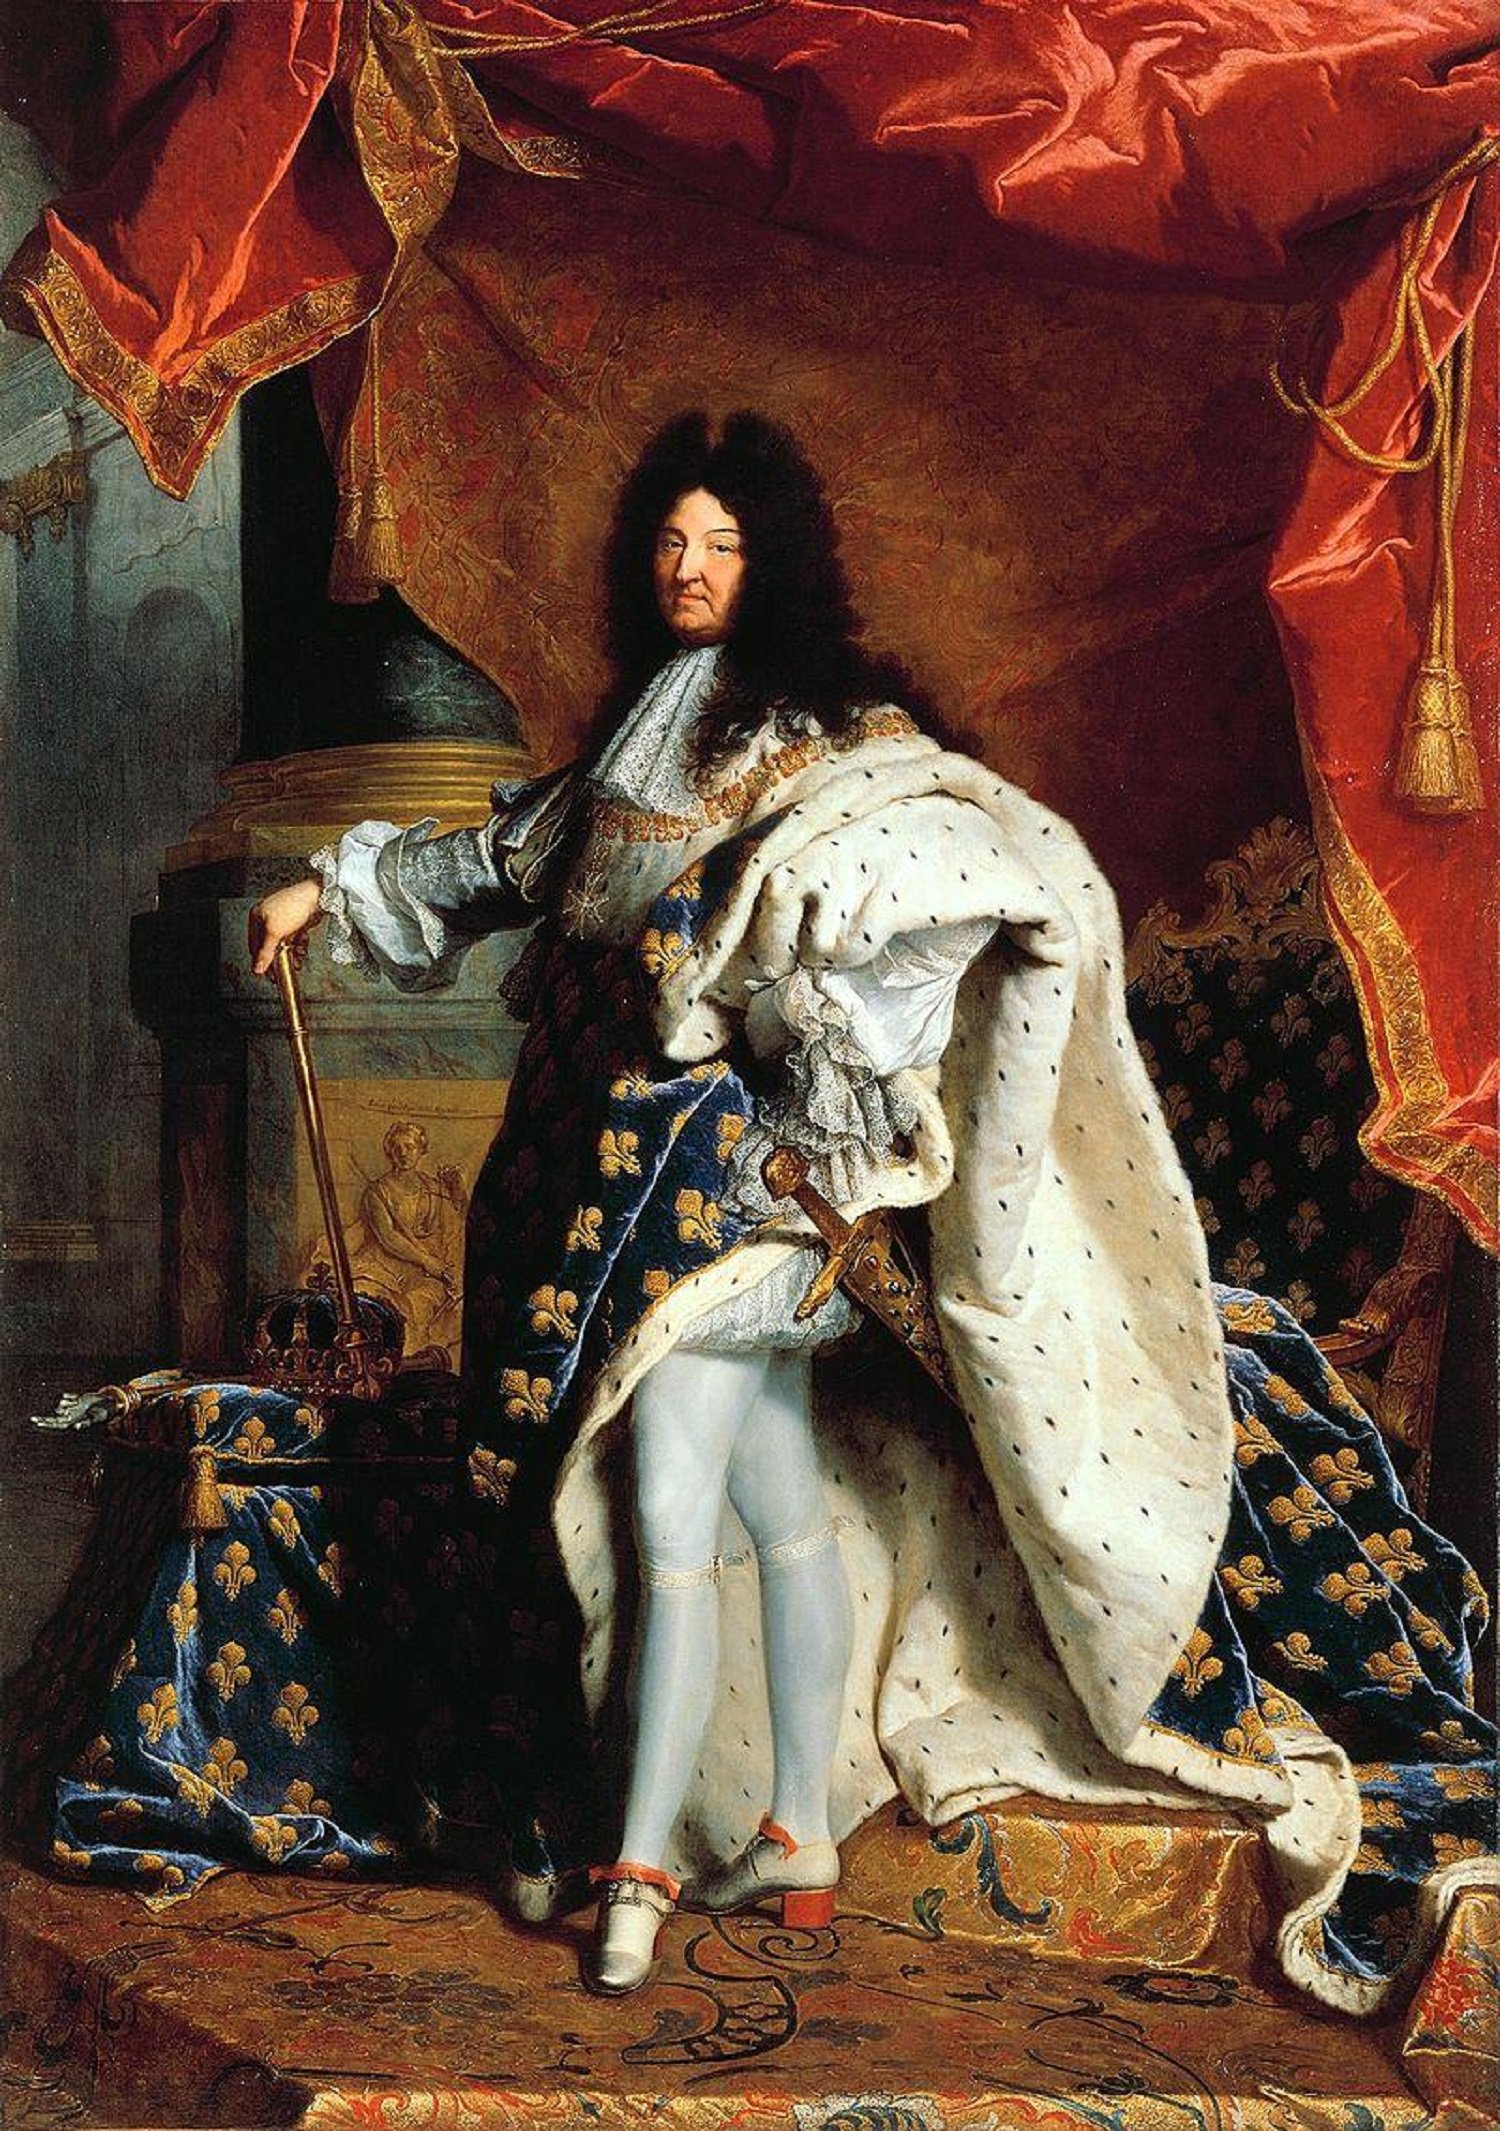 Lluís XIV: “L’ús de la llengua catalana em repugna i és contrari a la dignitat de la nació francesa”